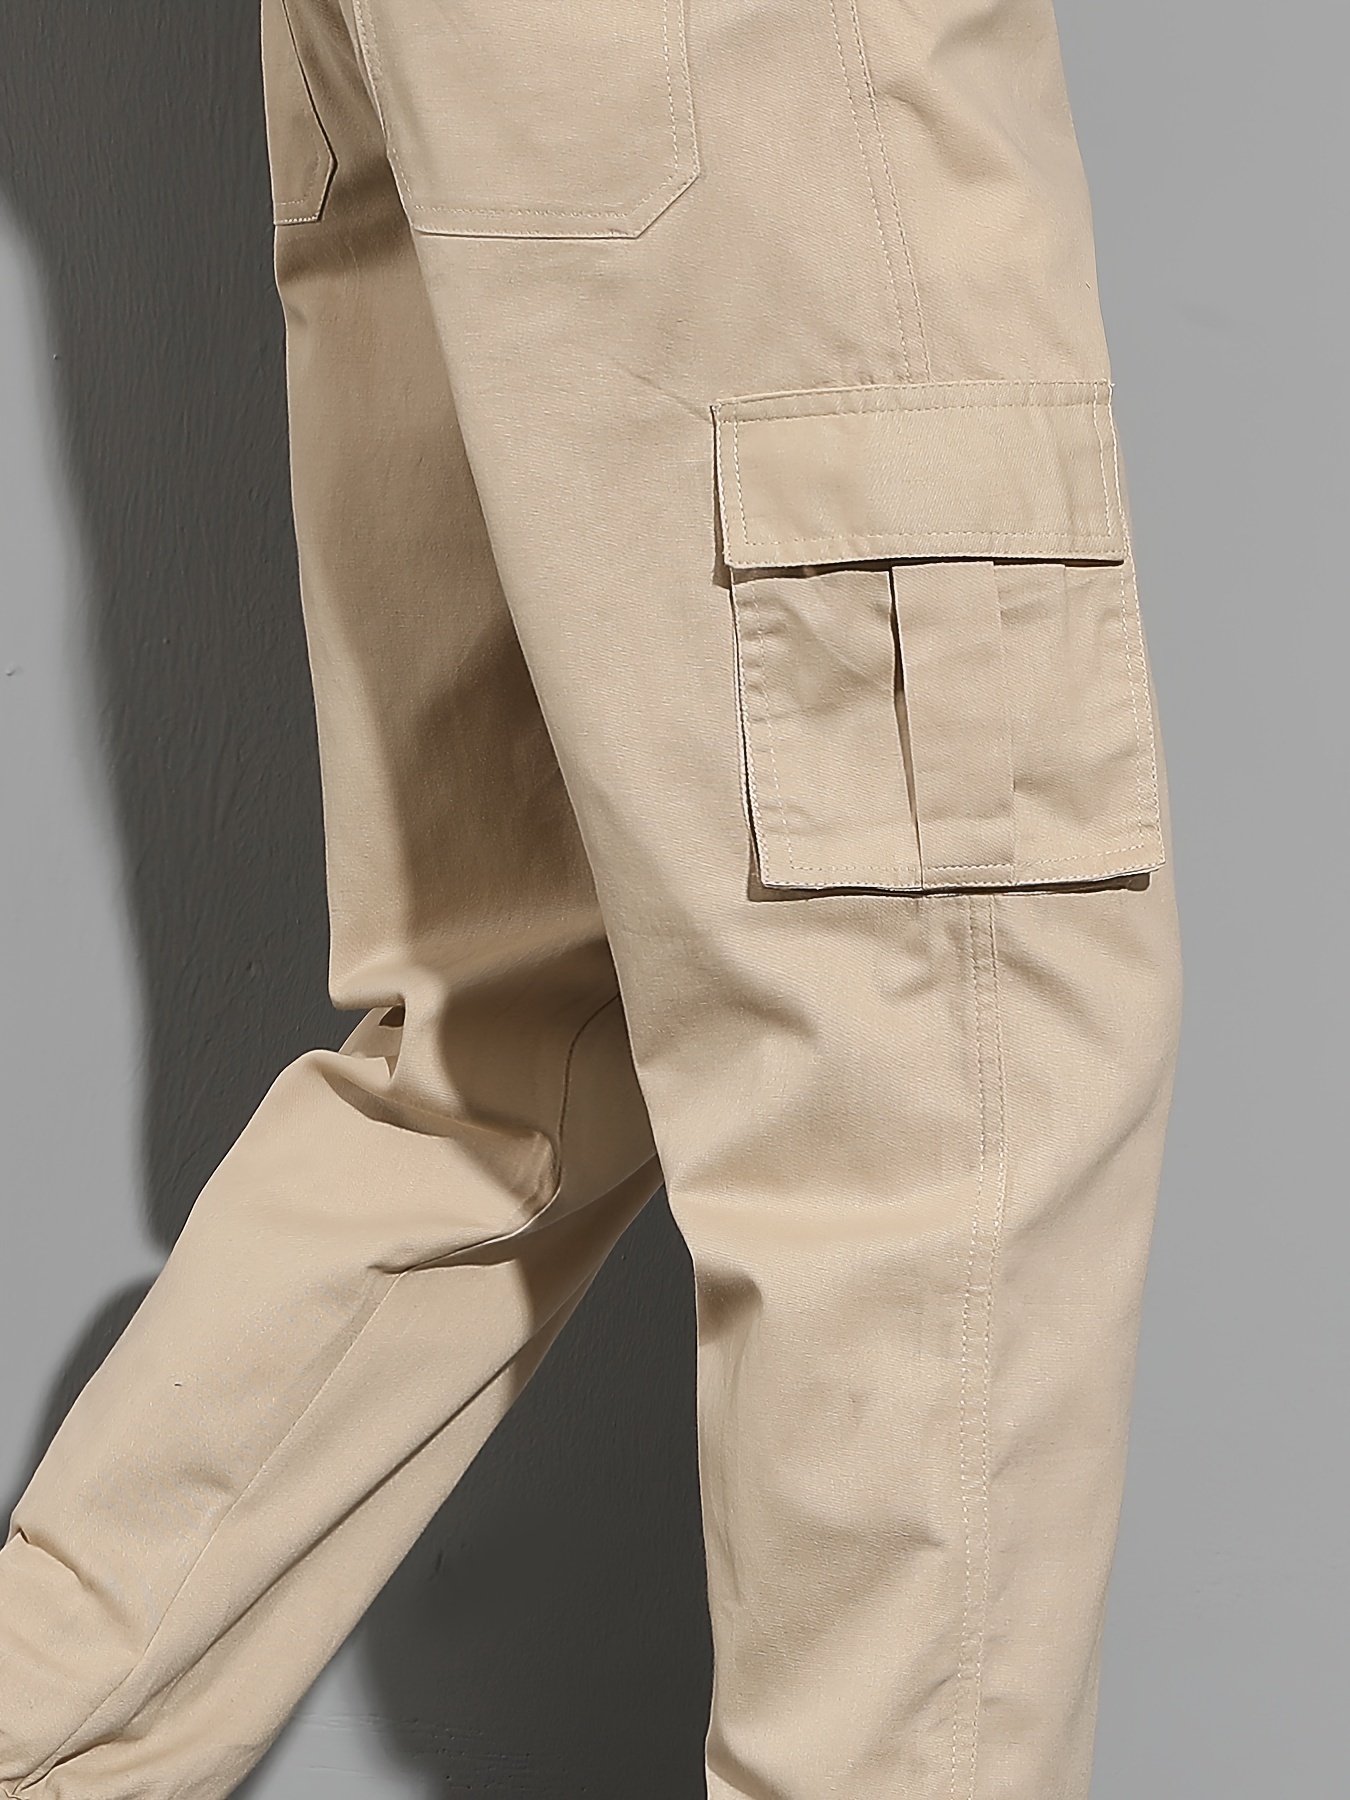 Dickies Pantalones de Trabajo Delgados para Hombre, Verde (Caqui